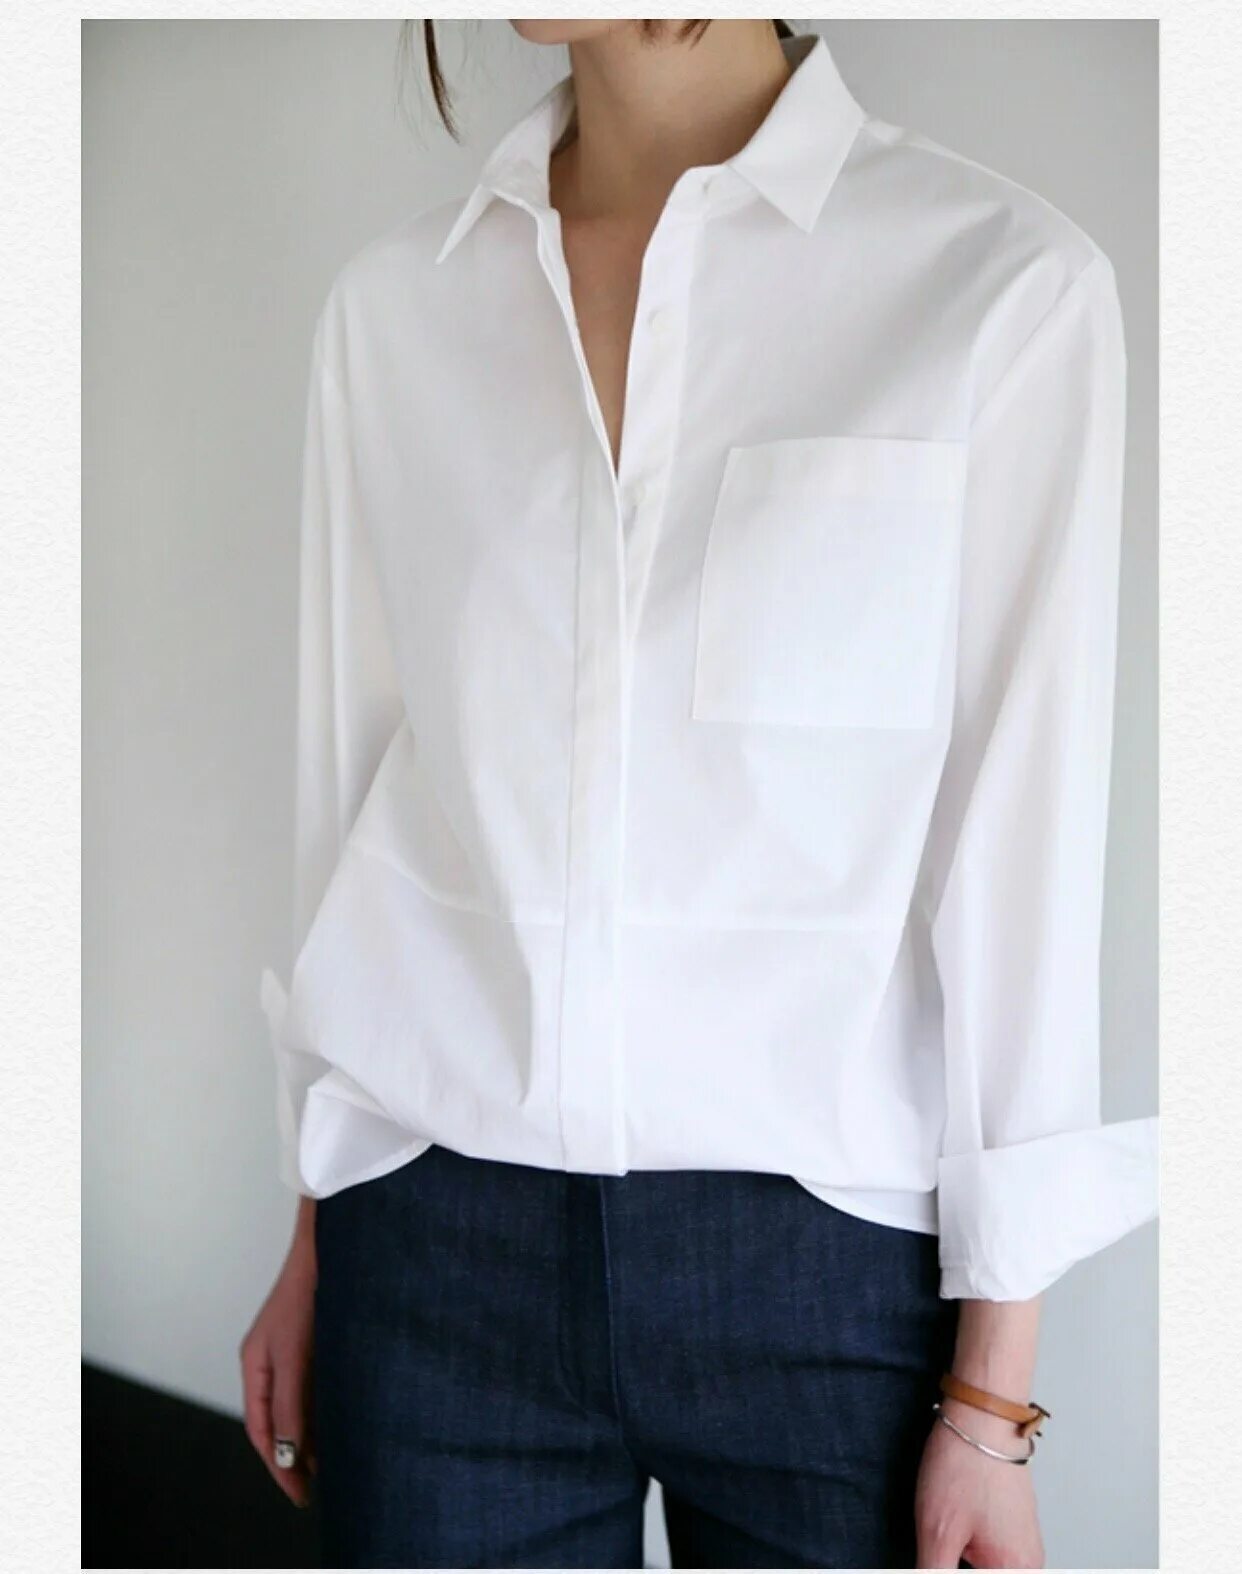 Базовая блузка. Рубашка женская. Белая рубашка женская. Белая блузка. Рубашки женские стильные.